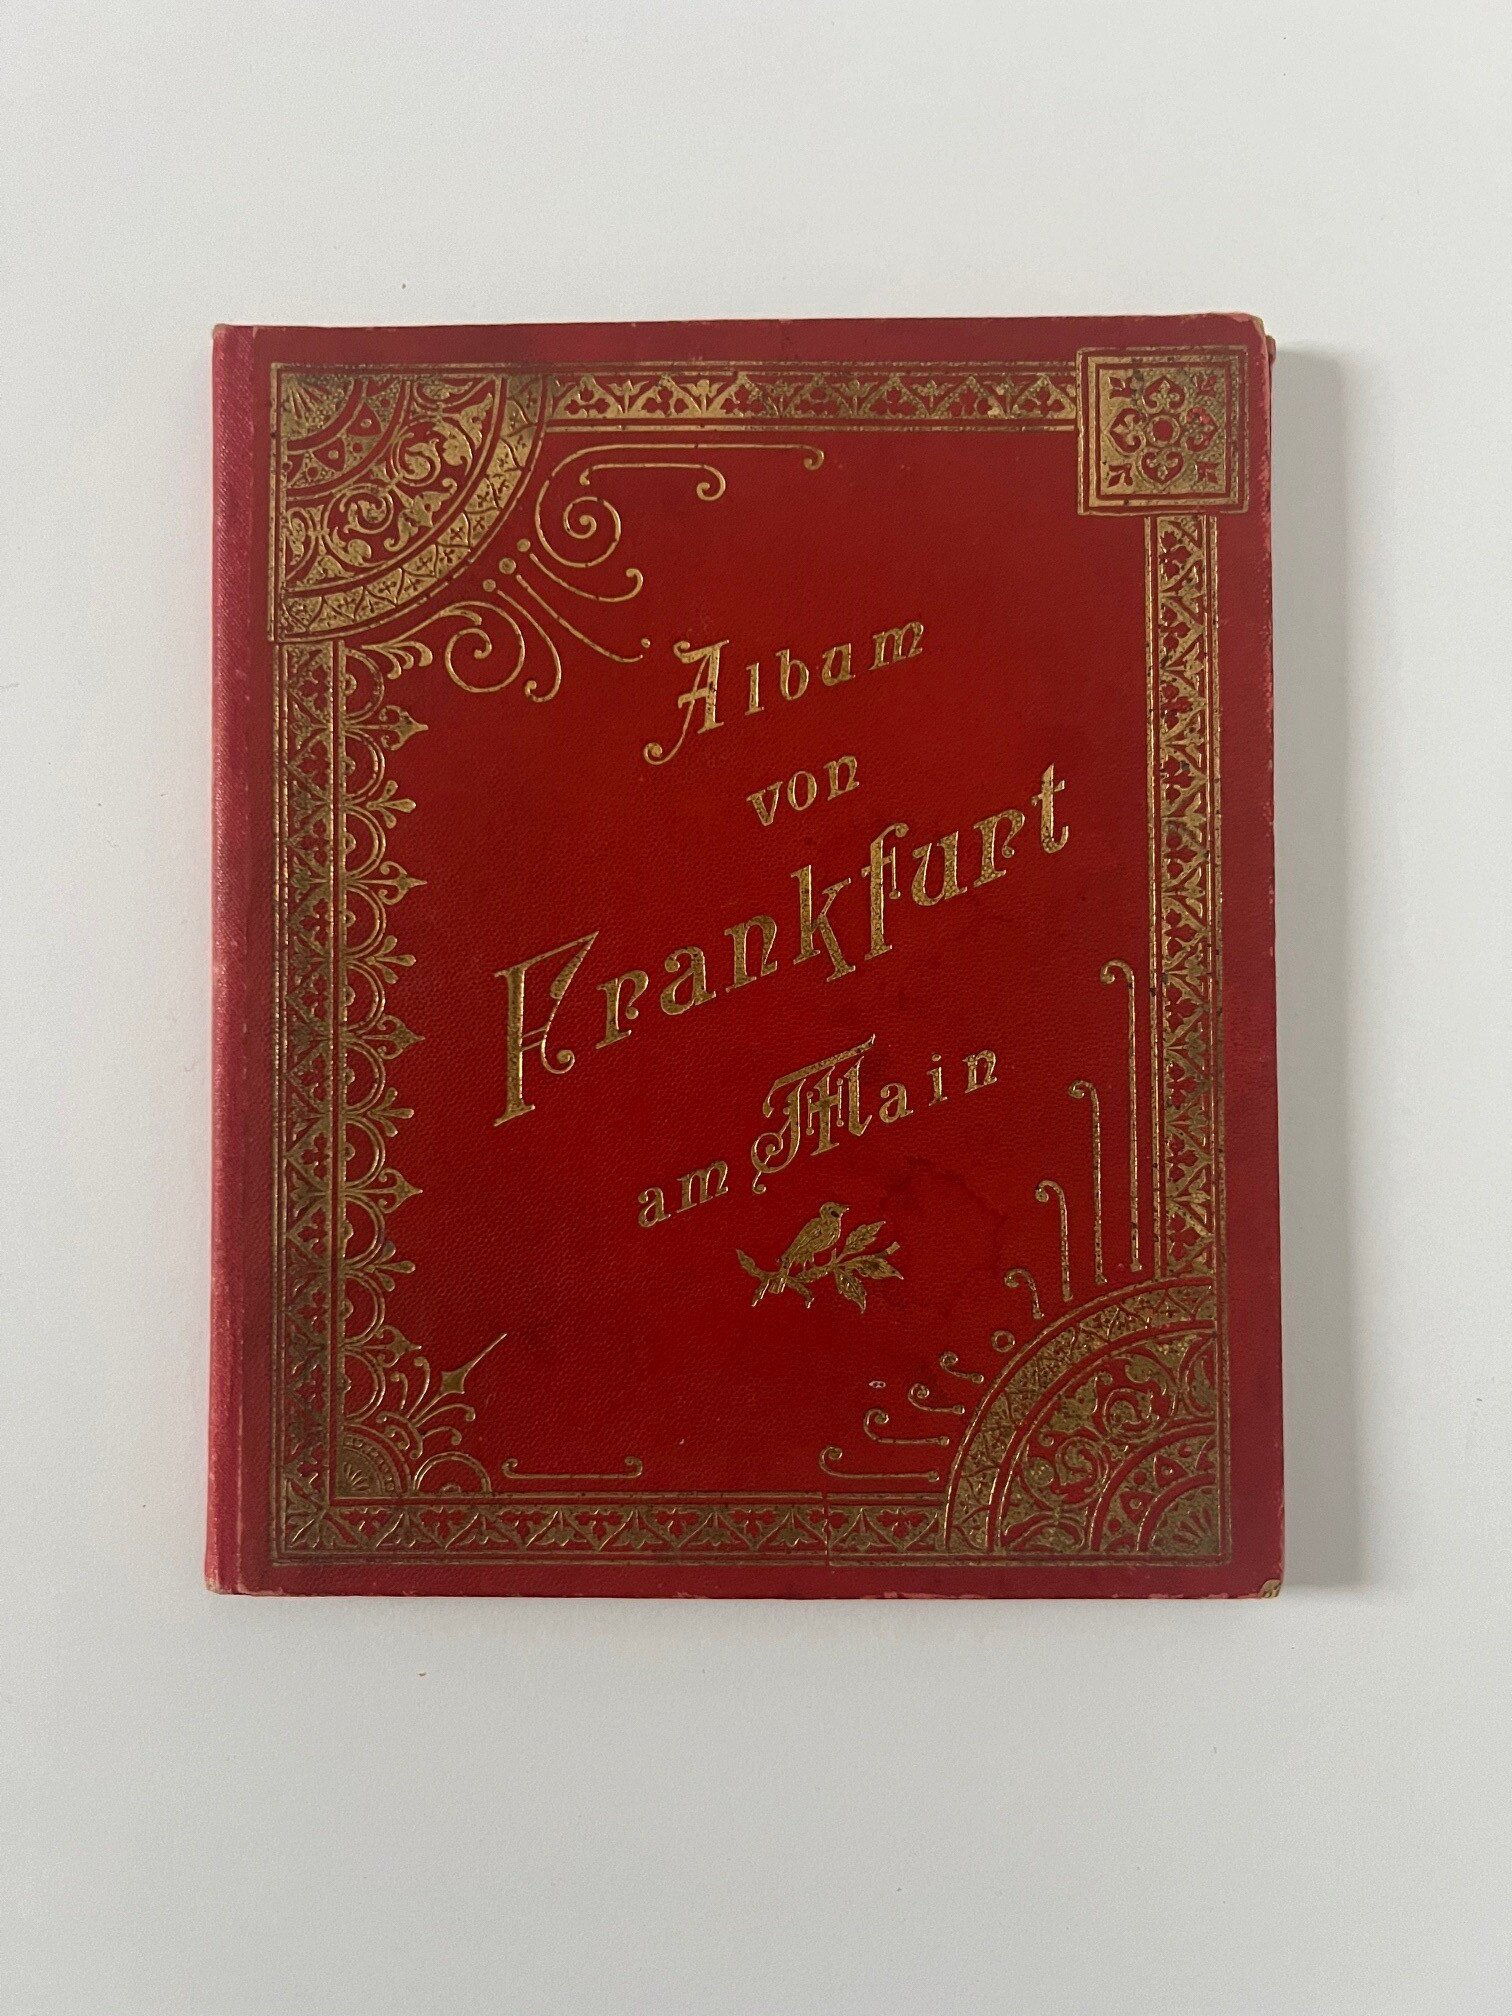 Verlag Gerhard Blümlein & Co, Album von Frankfurt am Main, 24 Lithographien als Leporello, ca. 1905. (Taunus-Rhein-Main - Regionalgeschichtliche Sammlung Dr. Stefan Naas CC BY-NC-SA)